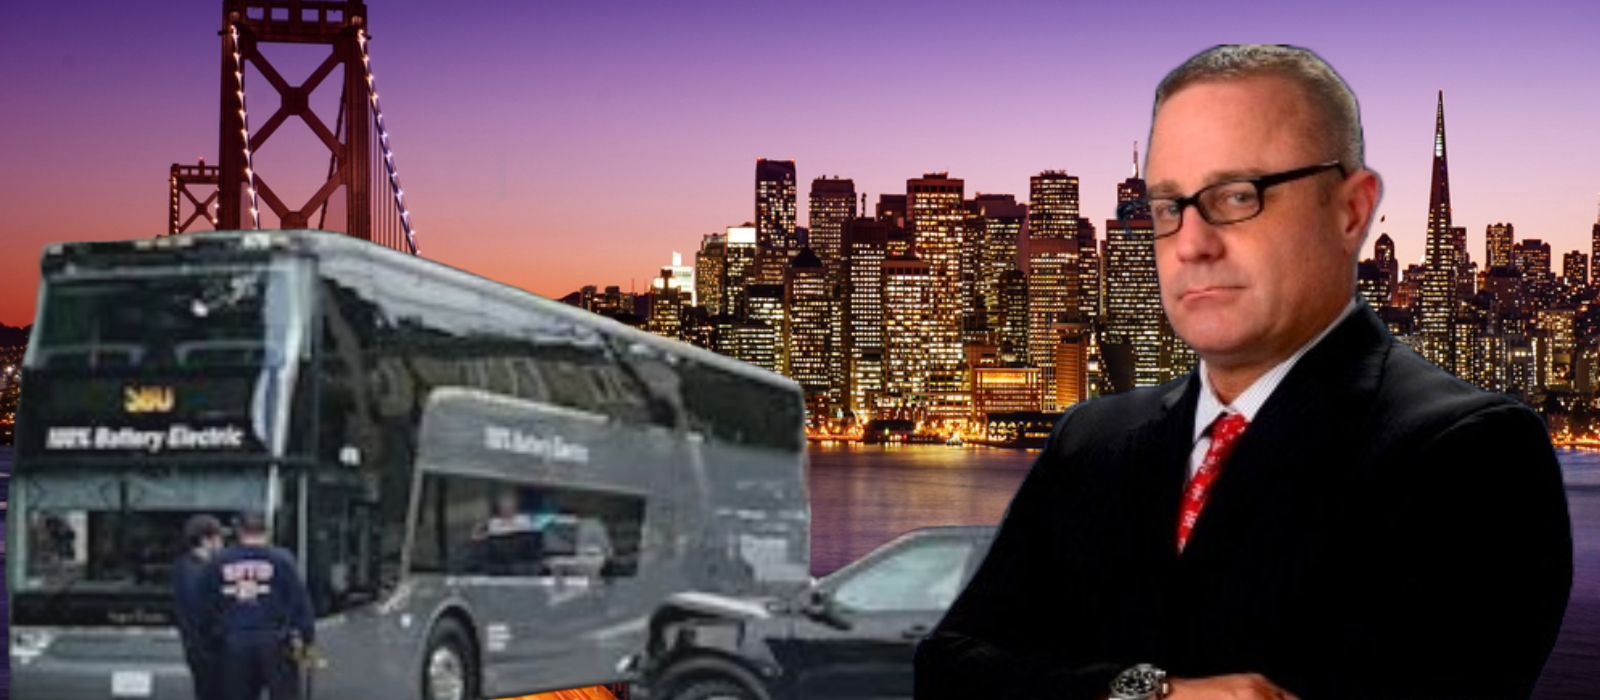 San Francisco Google Tech Bus Dangers: Legal Recourse, Accident Compensation